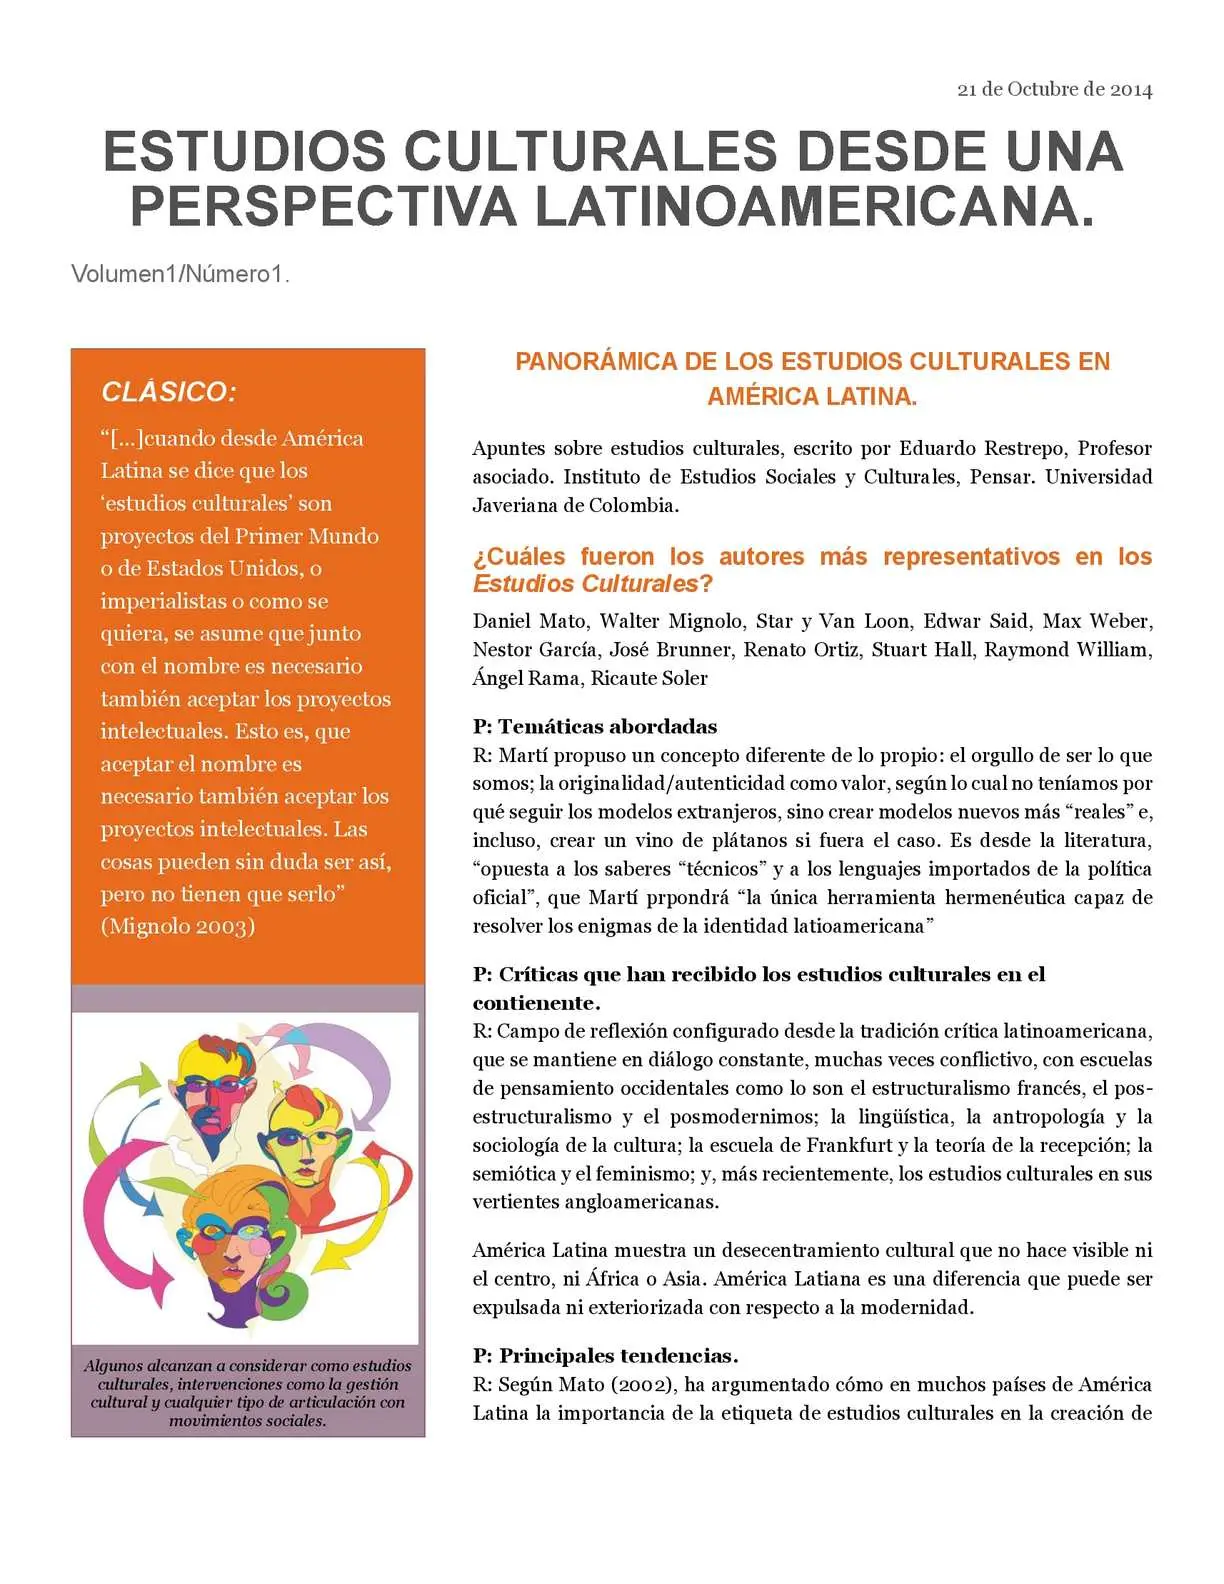 estudios culturales latinoamericanos resumen - Qué son los estudios culturales en América Latina